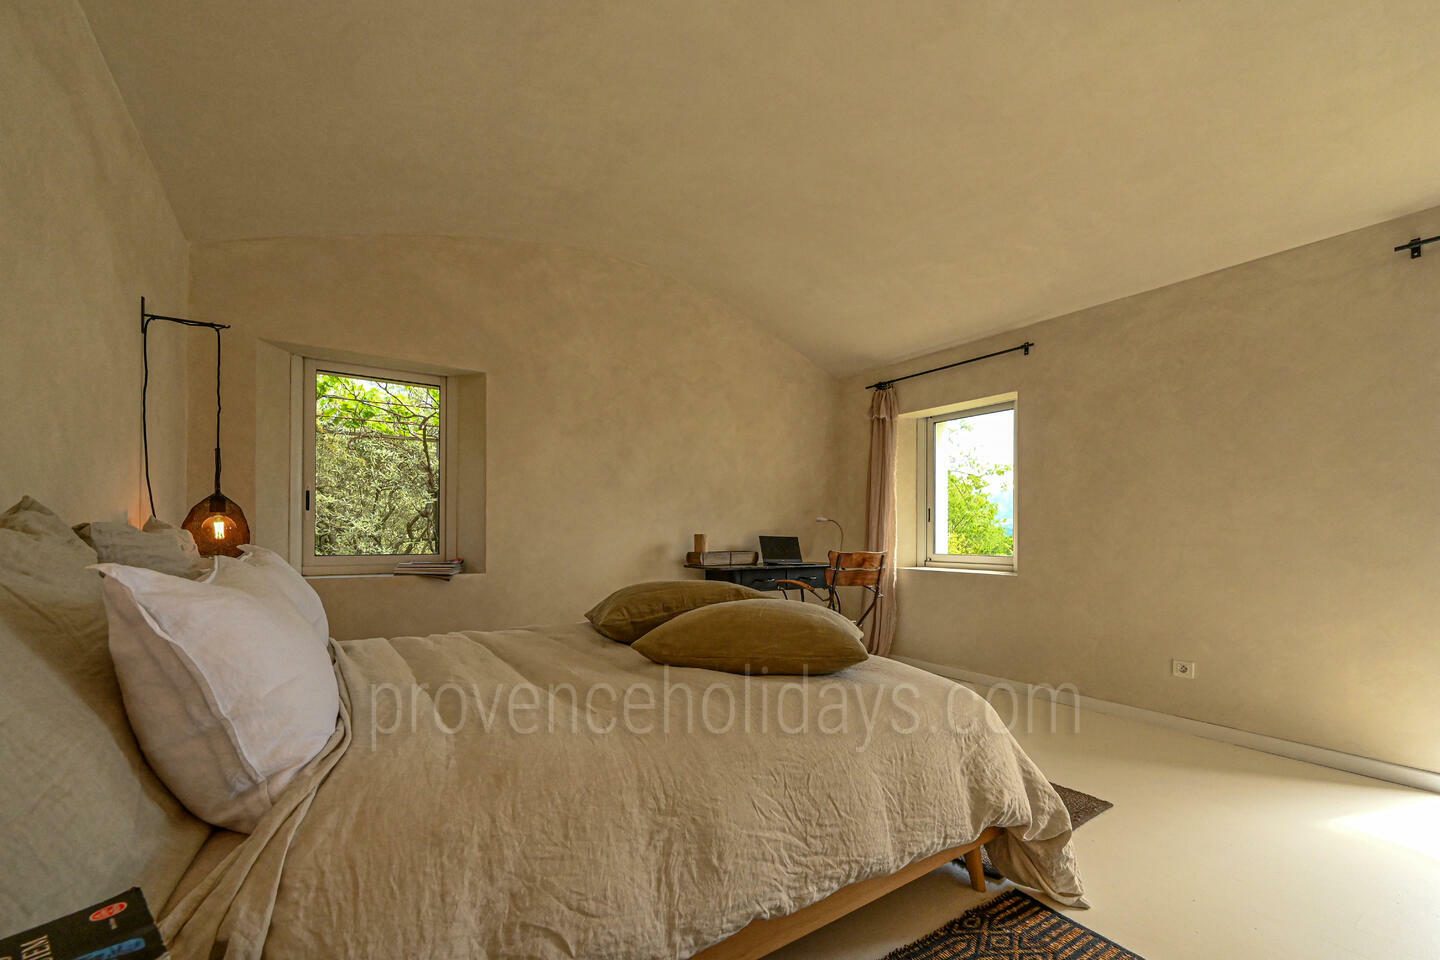 32 - Une Maison en Provence: Villa: Bedroom